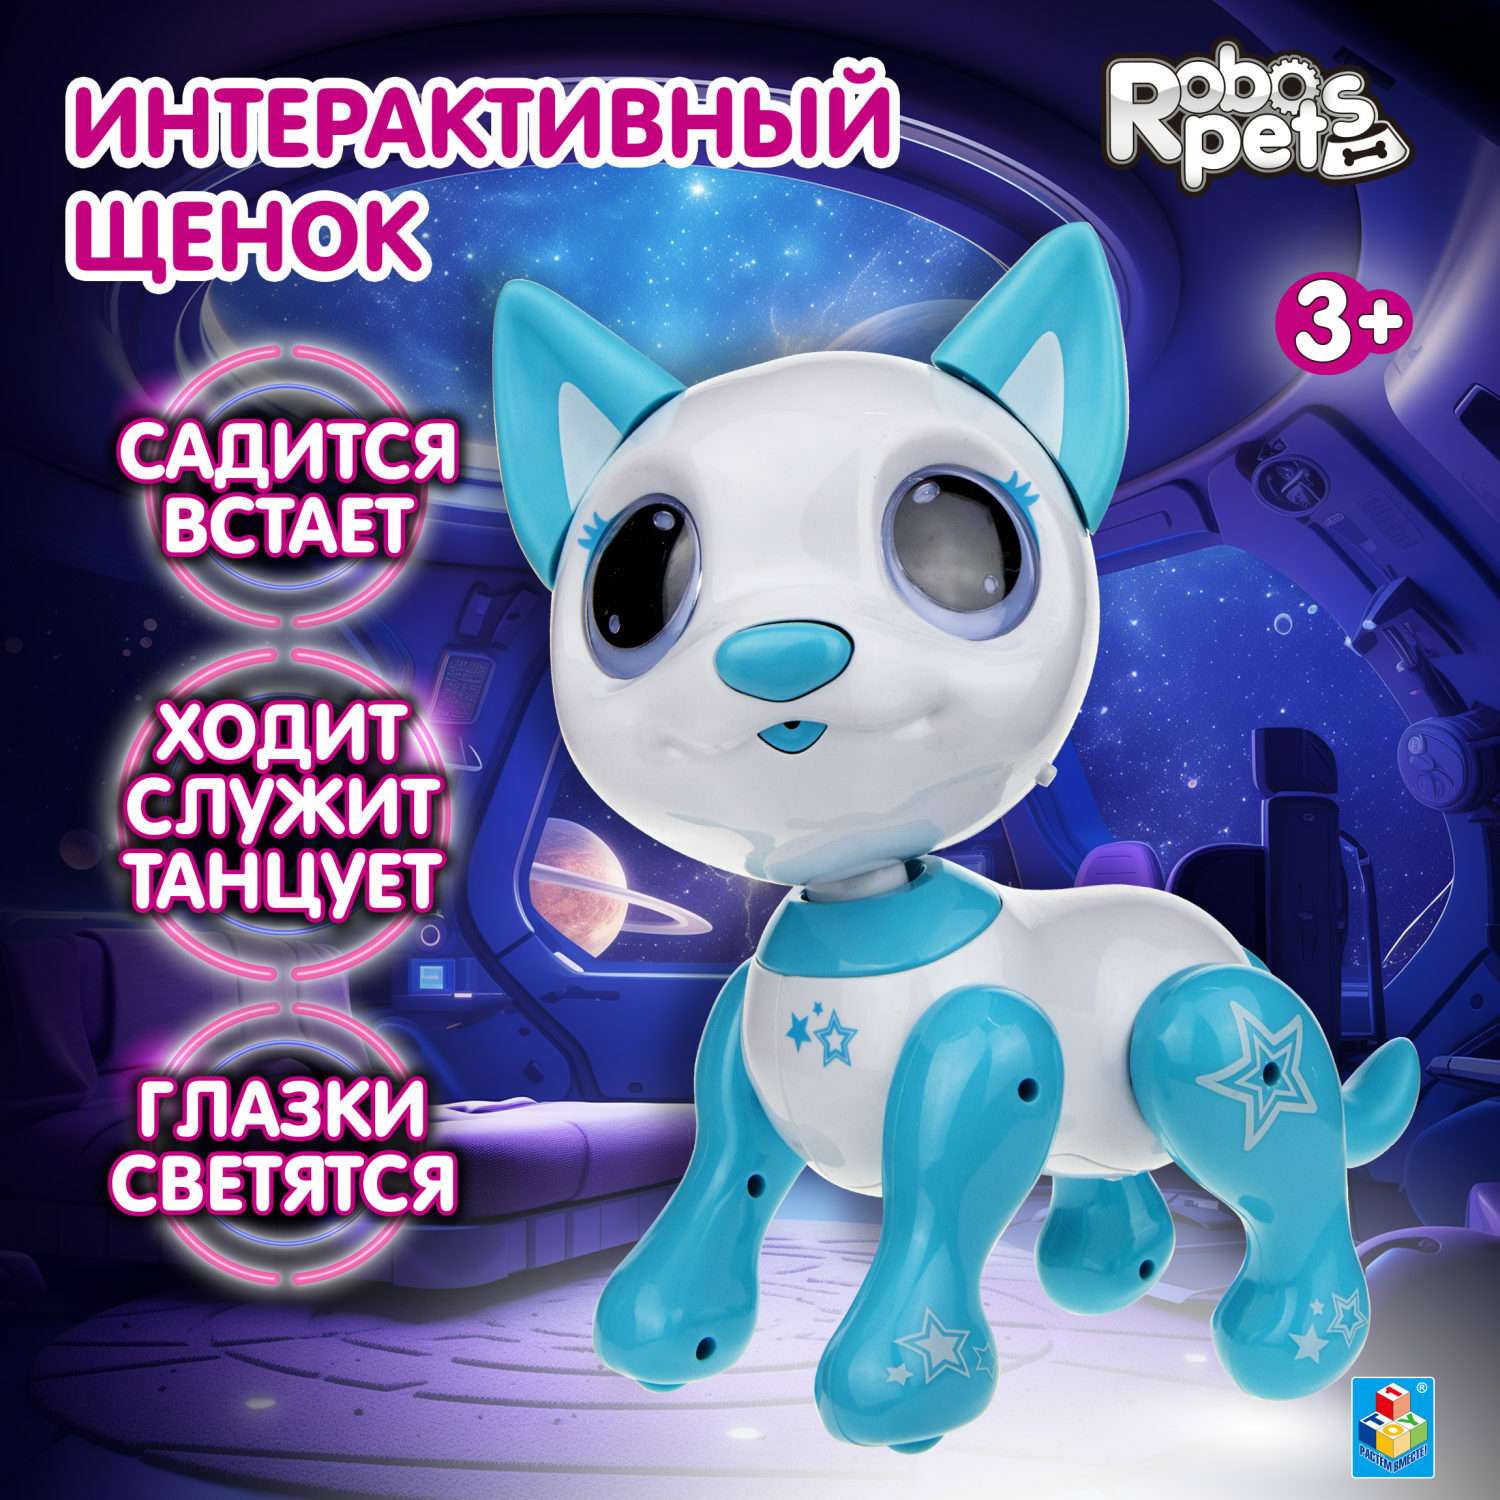 Интерактивная игрушка Robo Pets Робо- пёс белый - фото 1